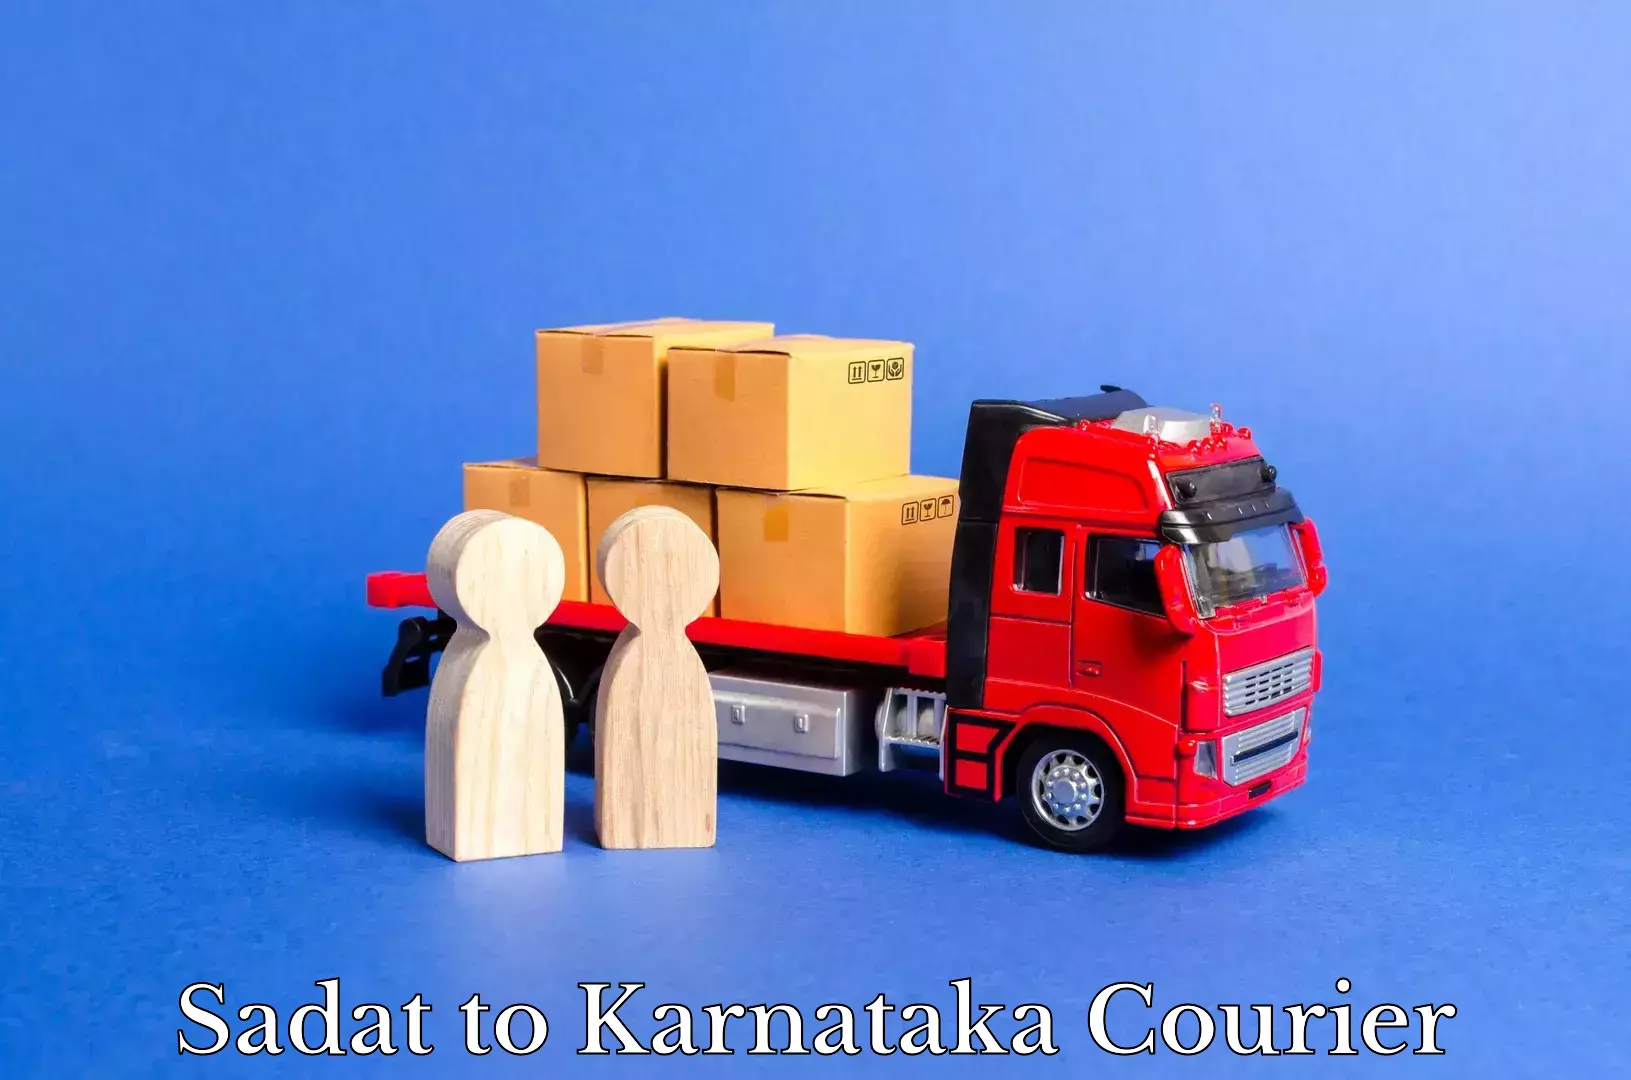 Quick dispatch service Sadat to Karnataka